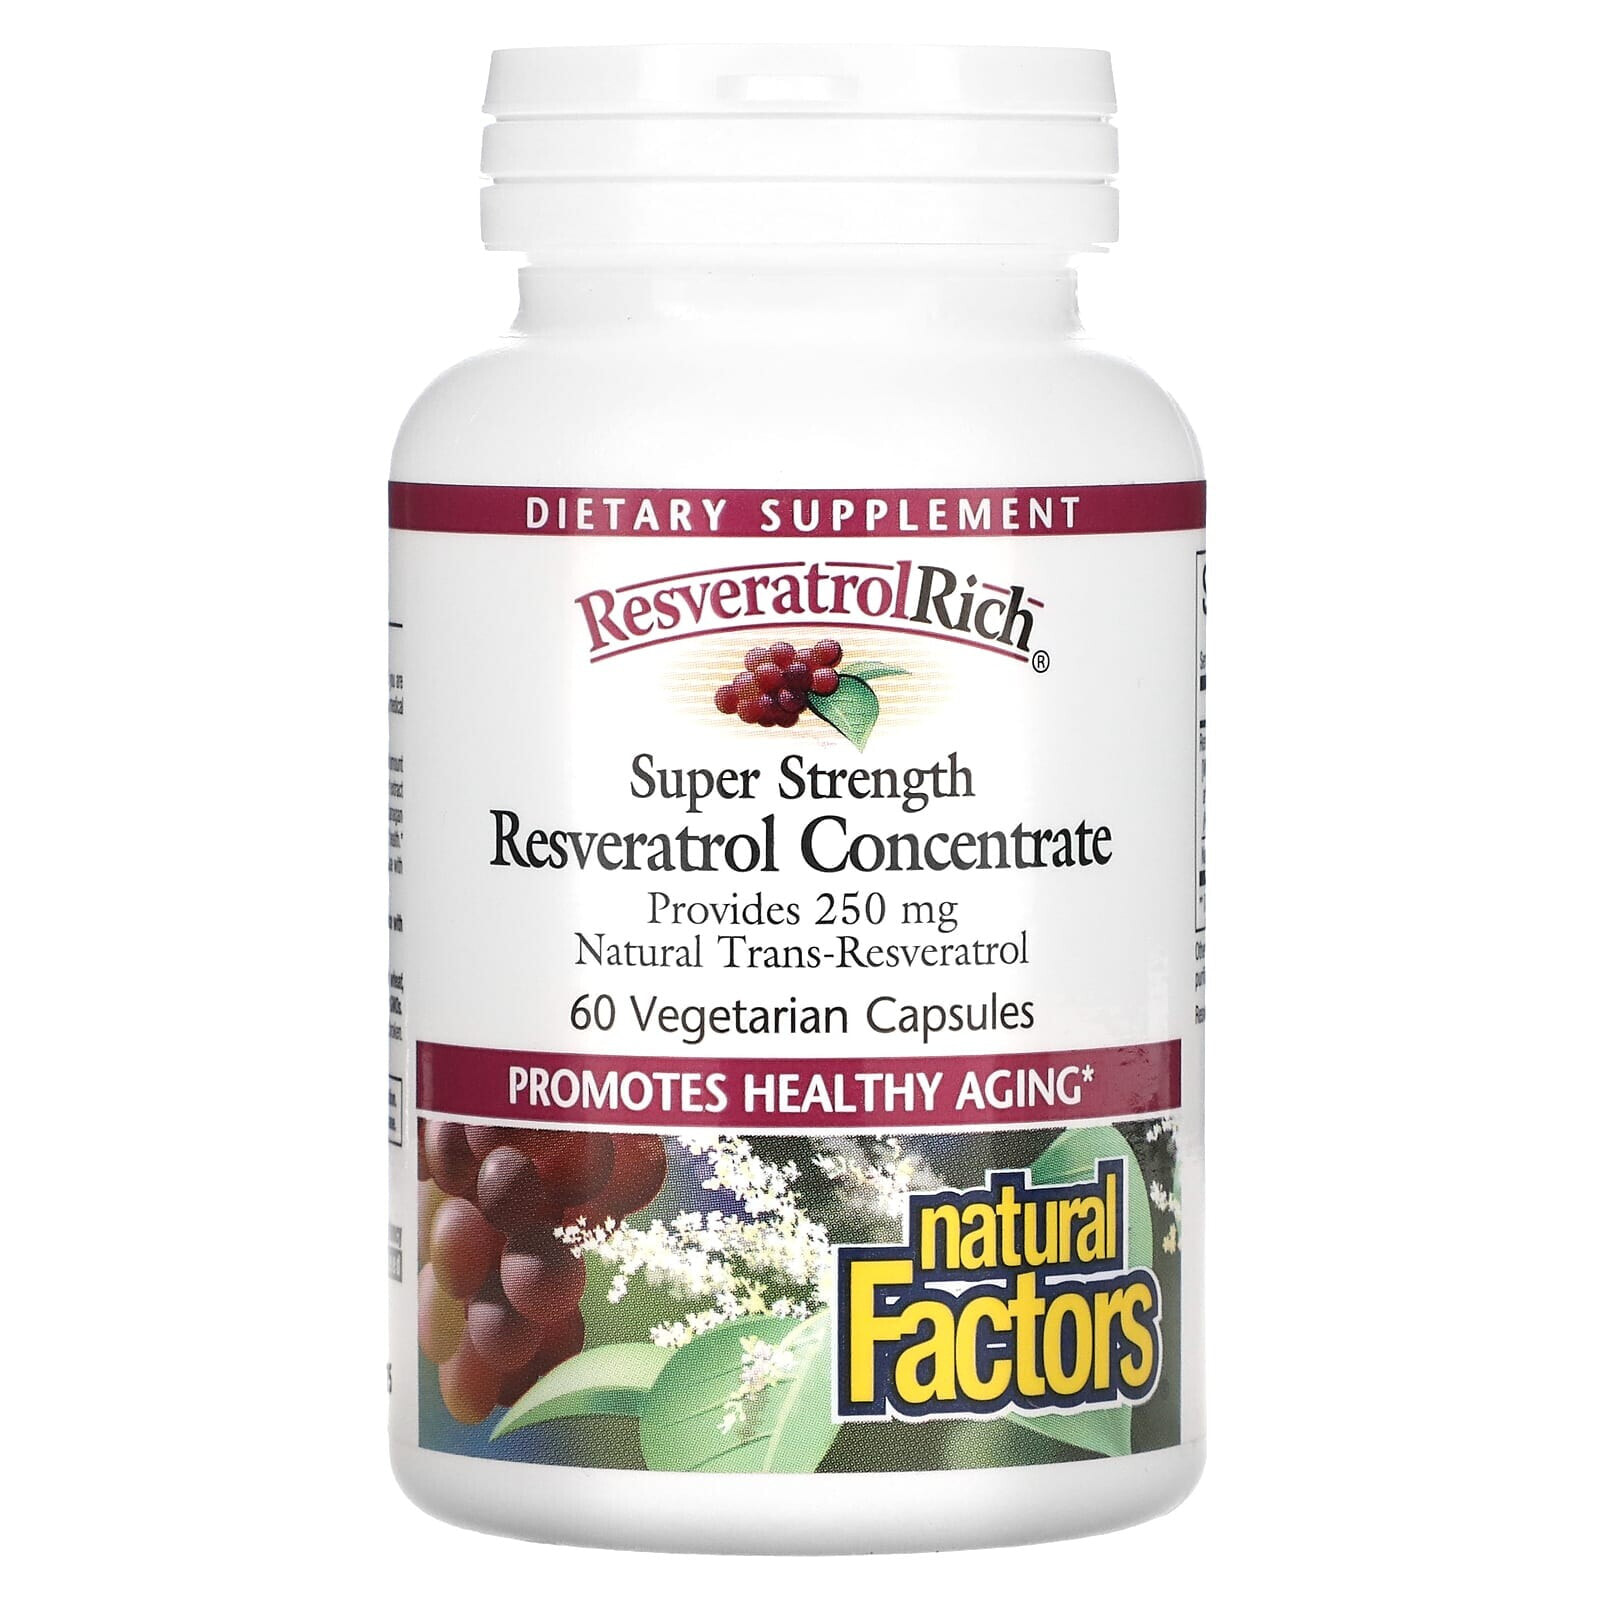 ResveratrolRich, Super Strength, Resveratrol Concentrate, 60 Vegetarian Capsules